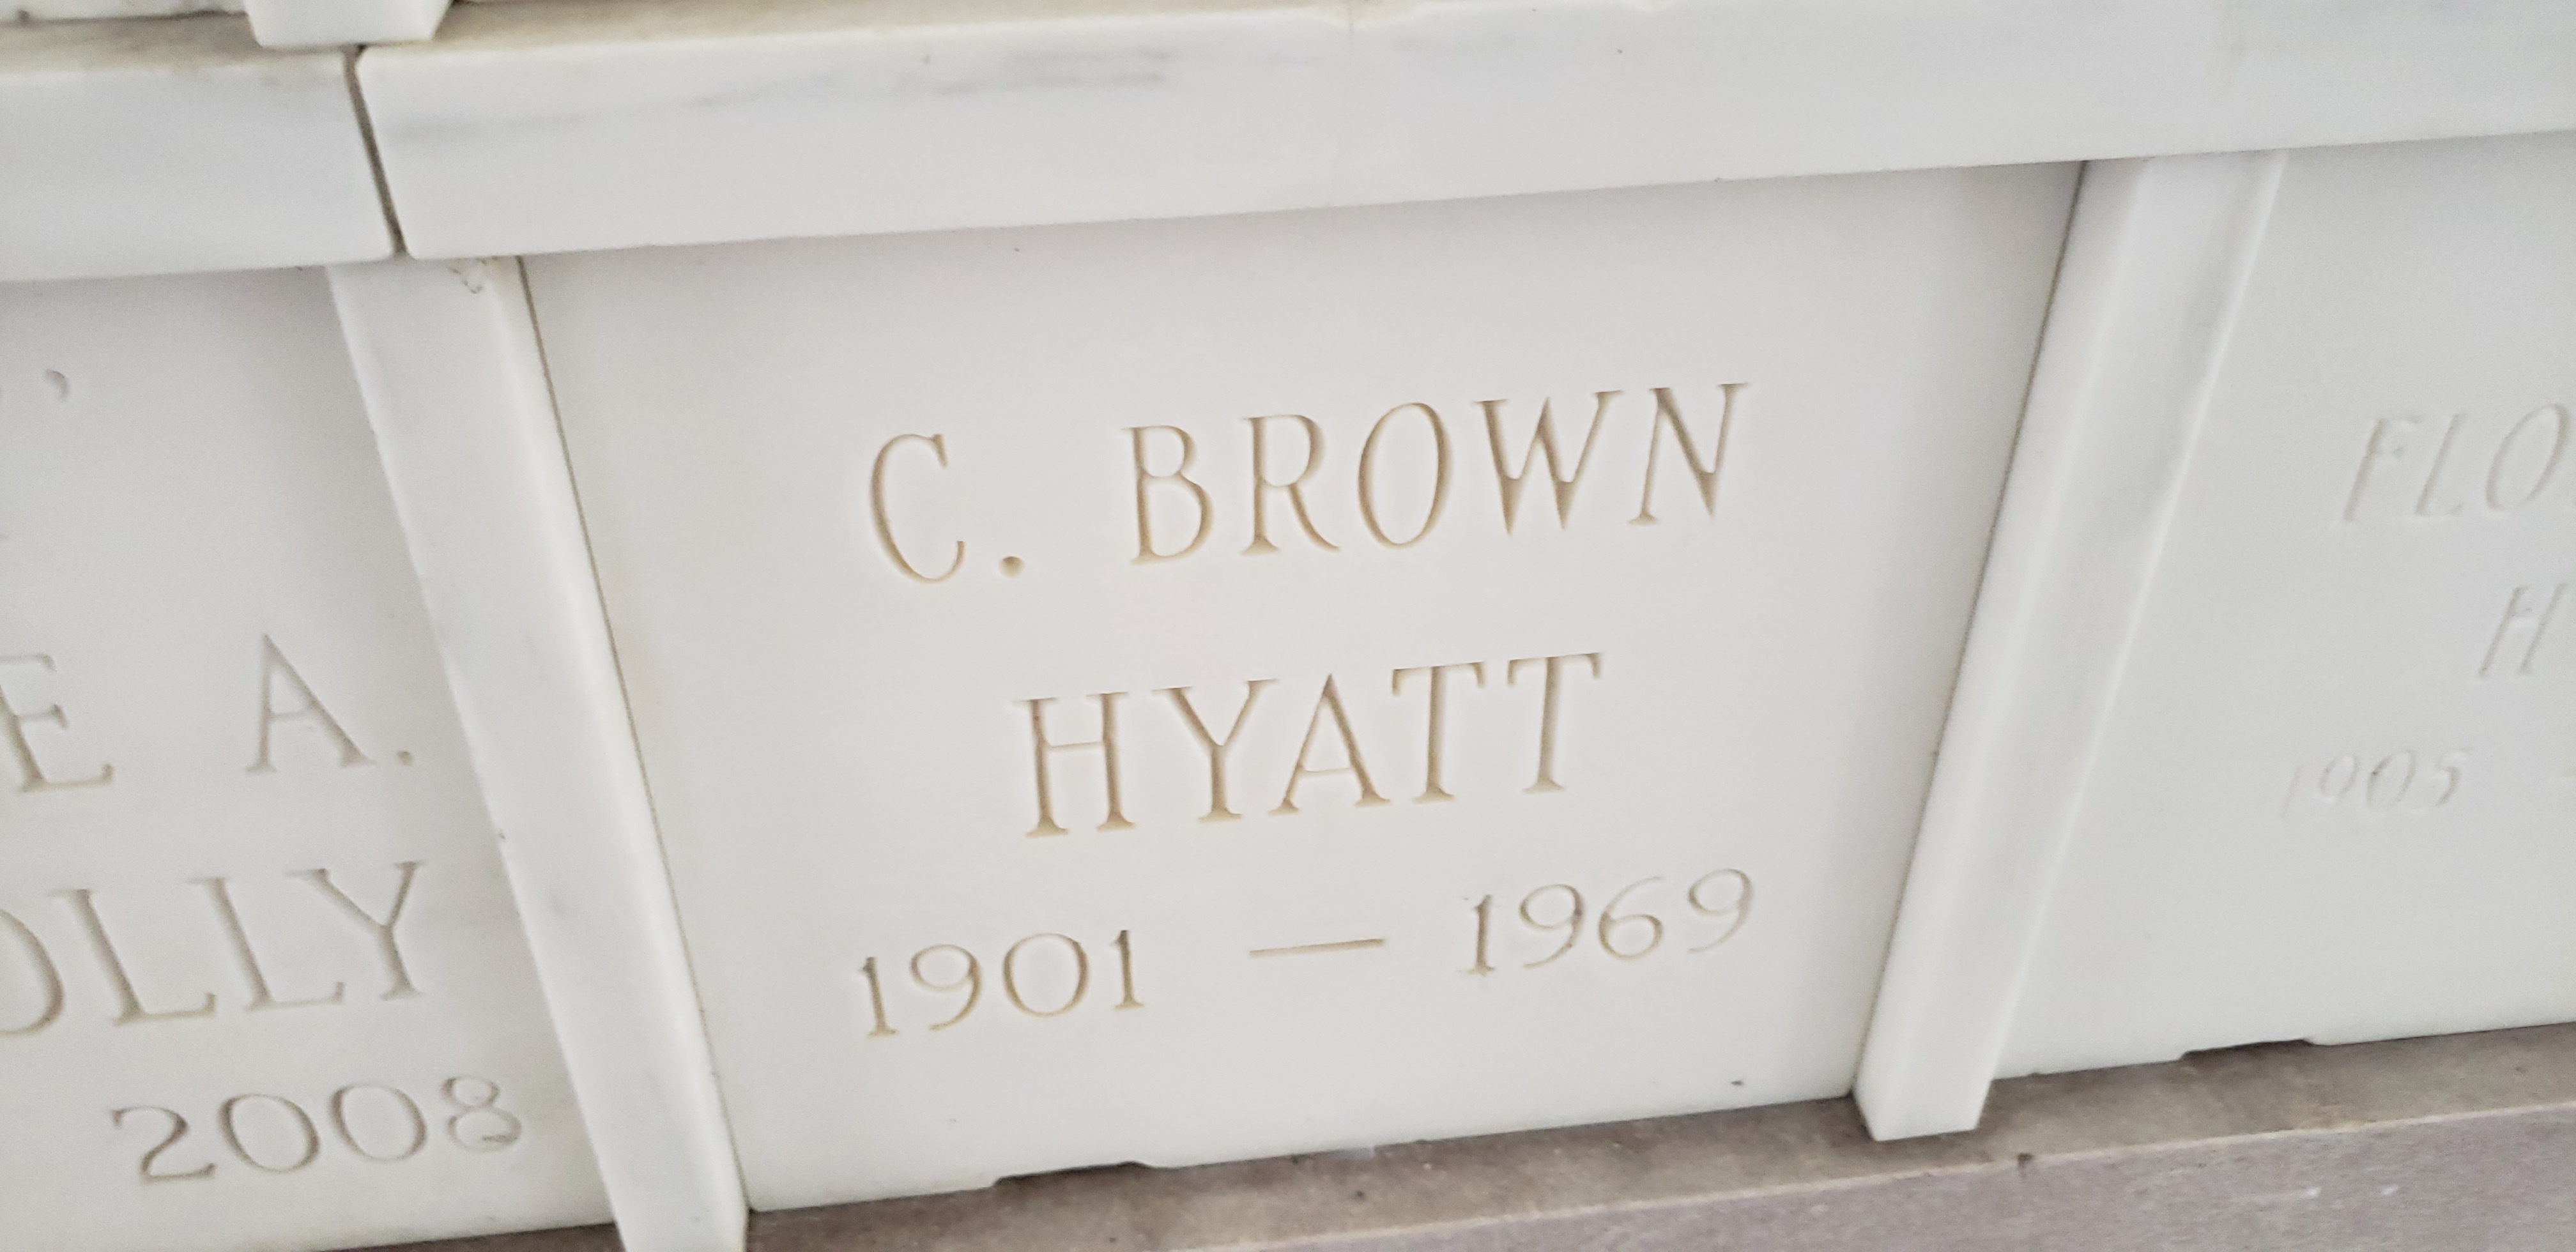 C Brown Hyatt